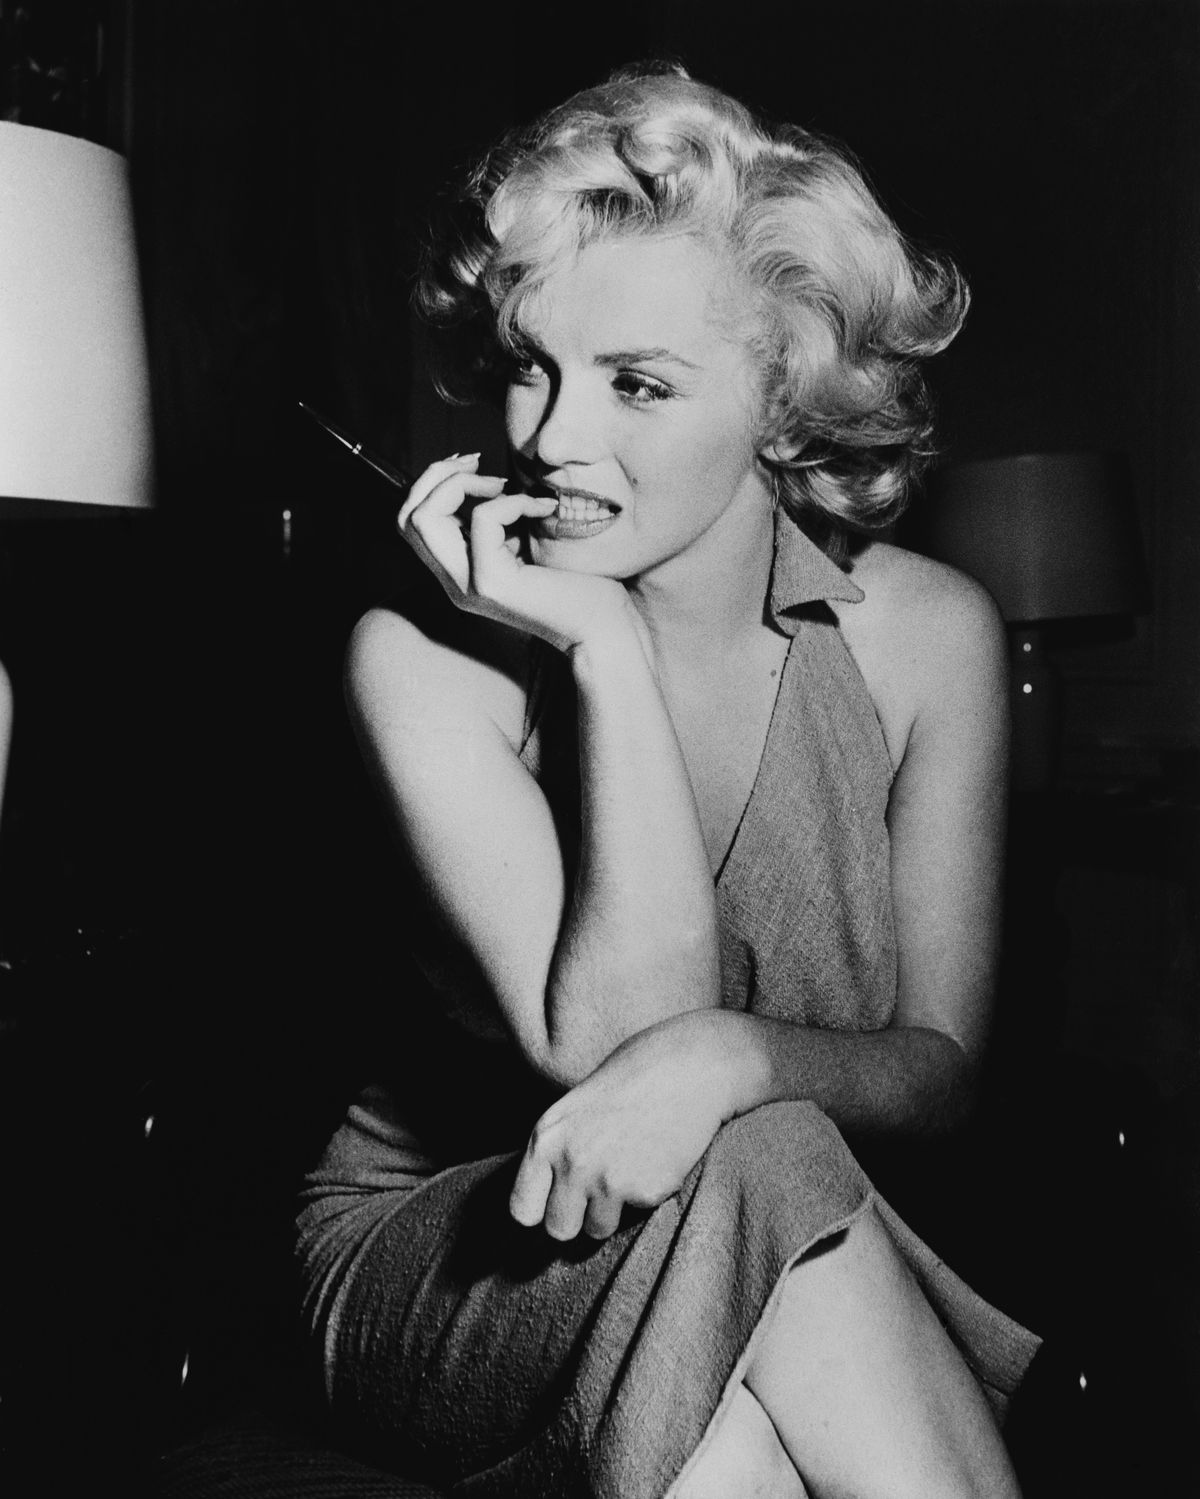 Blonde Teen Babe Sex - The explosive real story behind Marilyn Monroe film Blonde